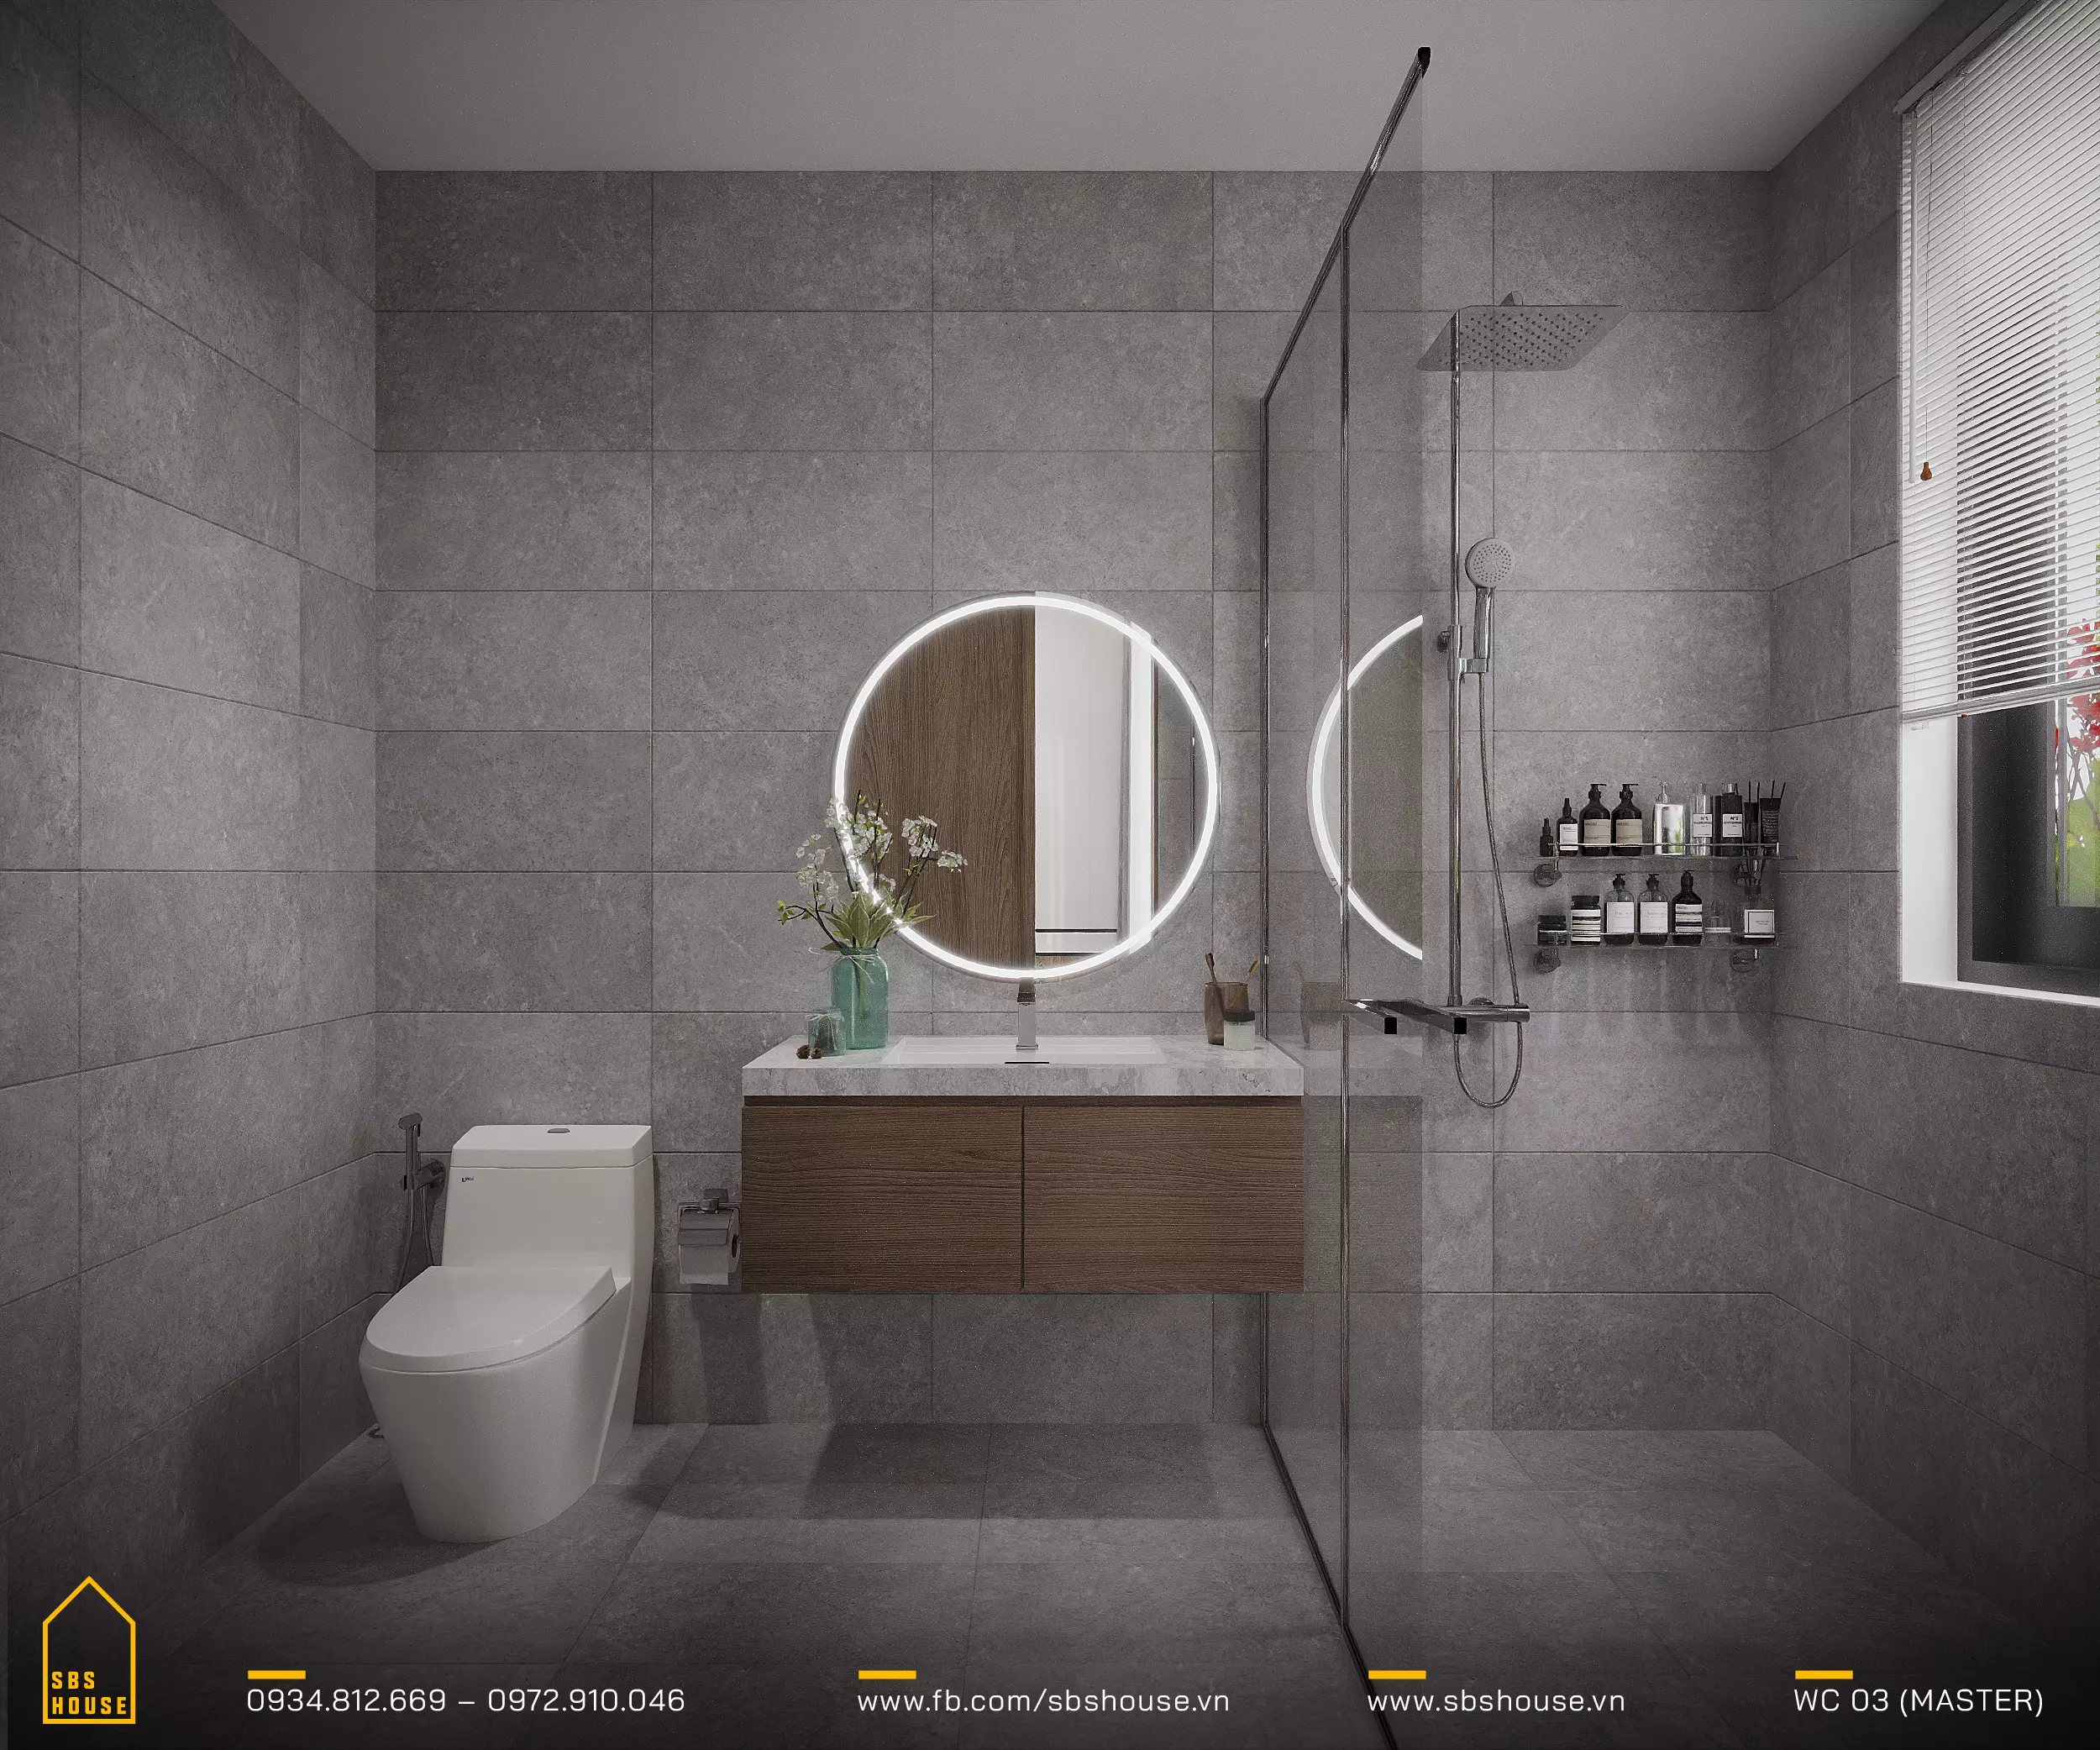 Phòng tắm mang lại cảm giác của một spa ngay trong nhà với thiết kế đơn giản và sang trọng. Gạch lát màu xám tạo nên một không gian thư giãn, còn gương tròn với đèn LED tích hợp không chỉ cung cấp ánh sáng tốt nhất cho việc chăm sóc cá nhân mà còn là điểm nhấn thẩm mỹ cao.